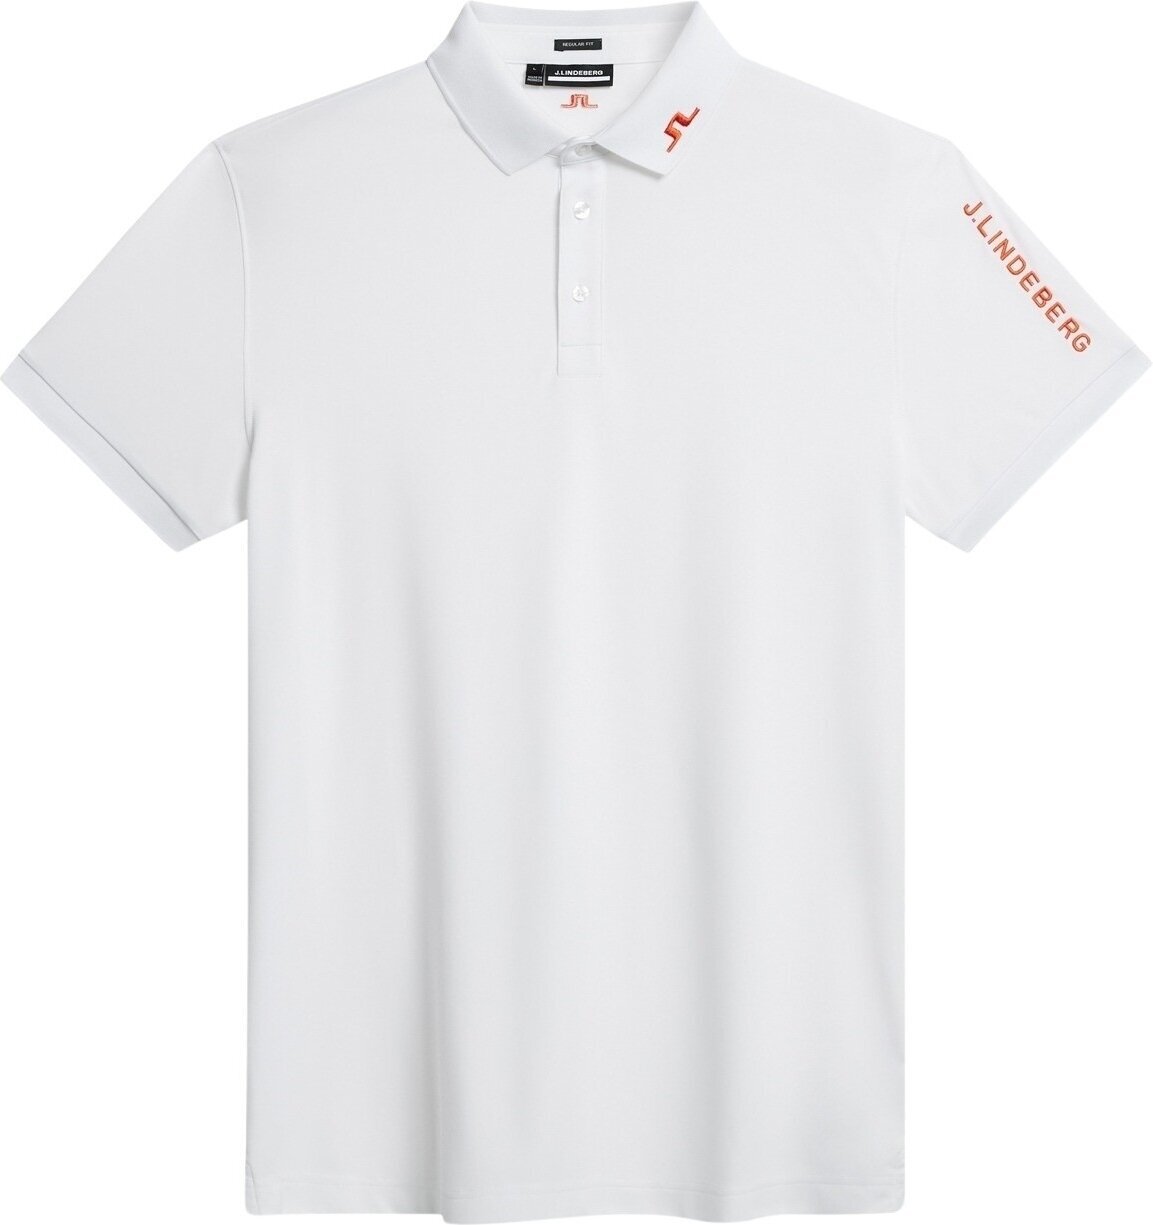 Camiseta polo J.Lindeberg Tour Tech Reg Fit Mens Polo Blanco S Camiseta polo